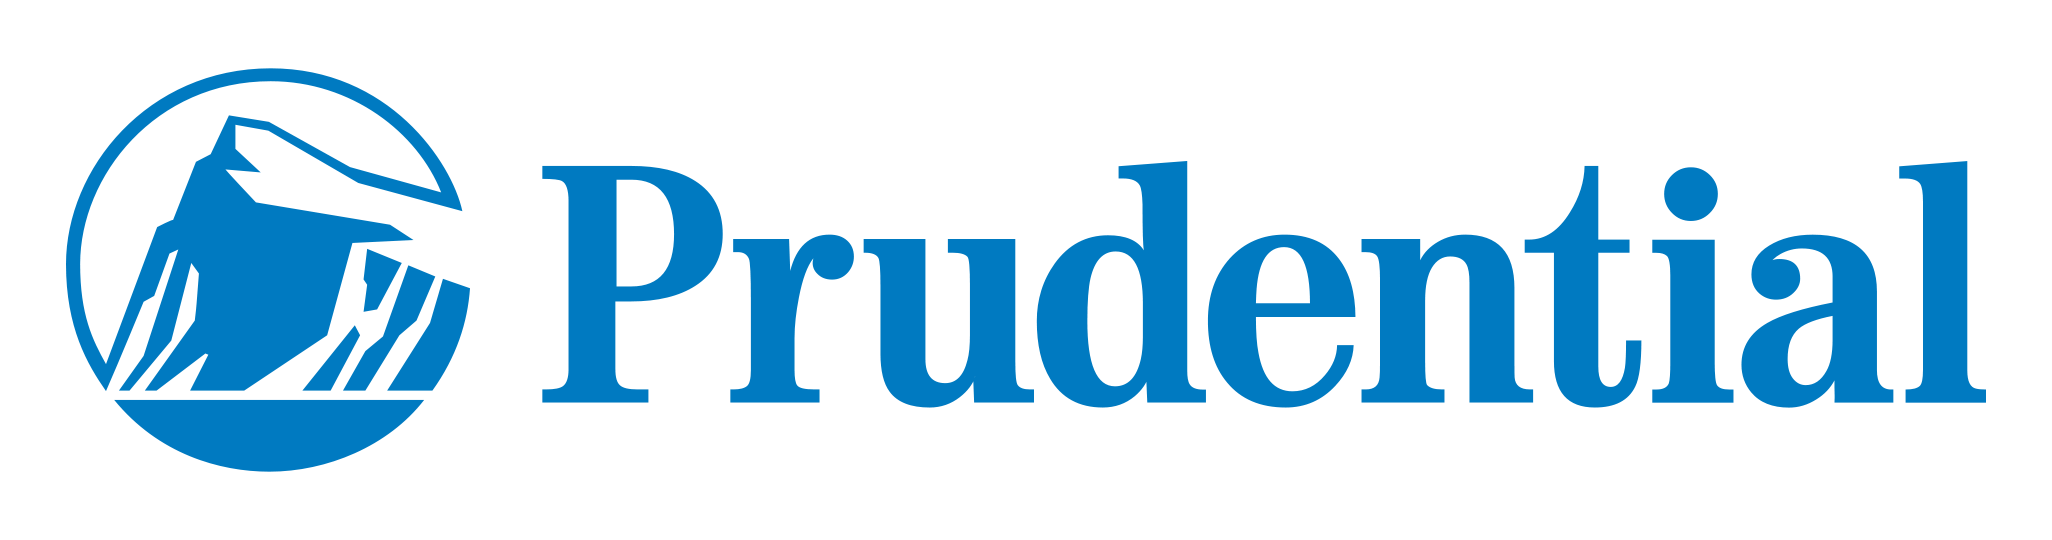 Image result for prudential logo transparent